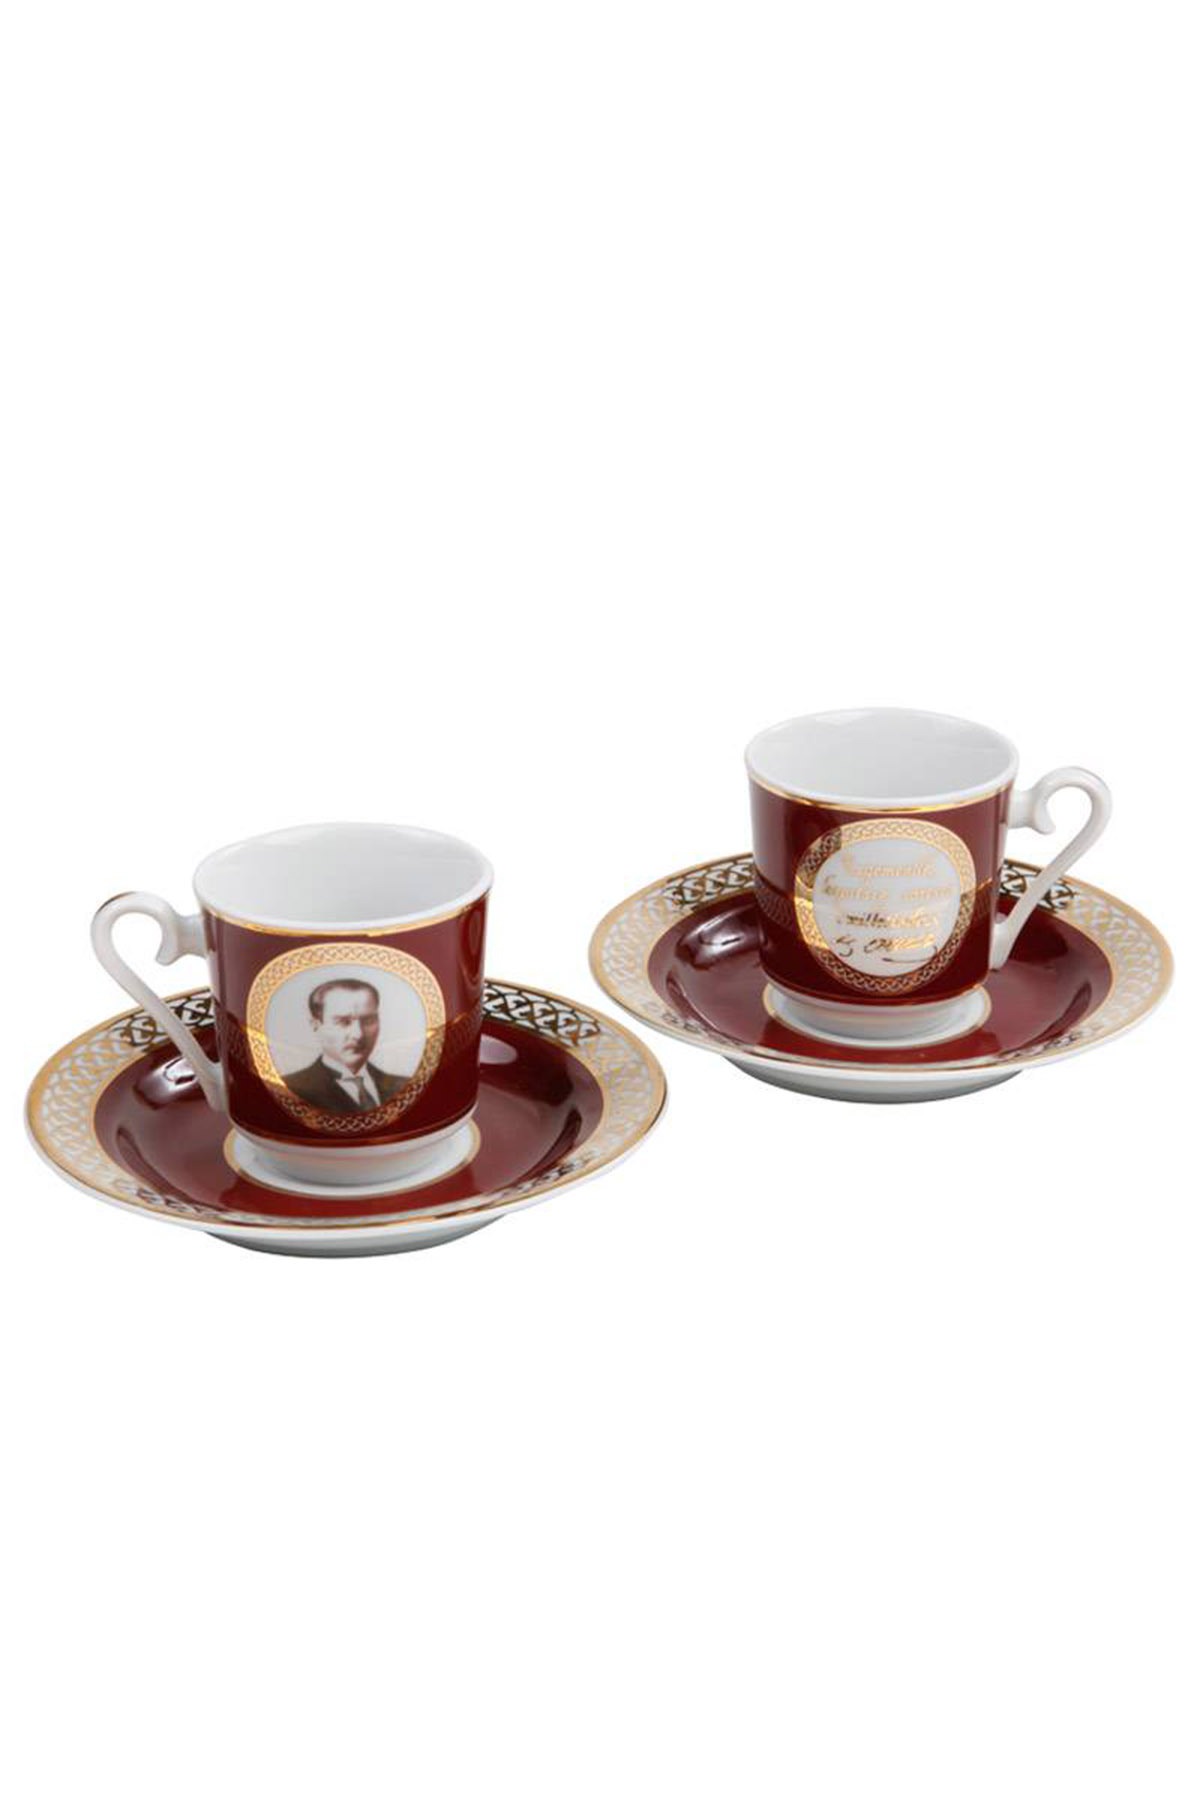 Kütahya Porselen Atatürk Bordo Kahve Fincan Takımı